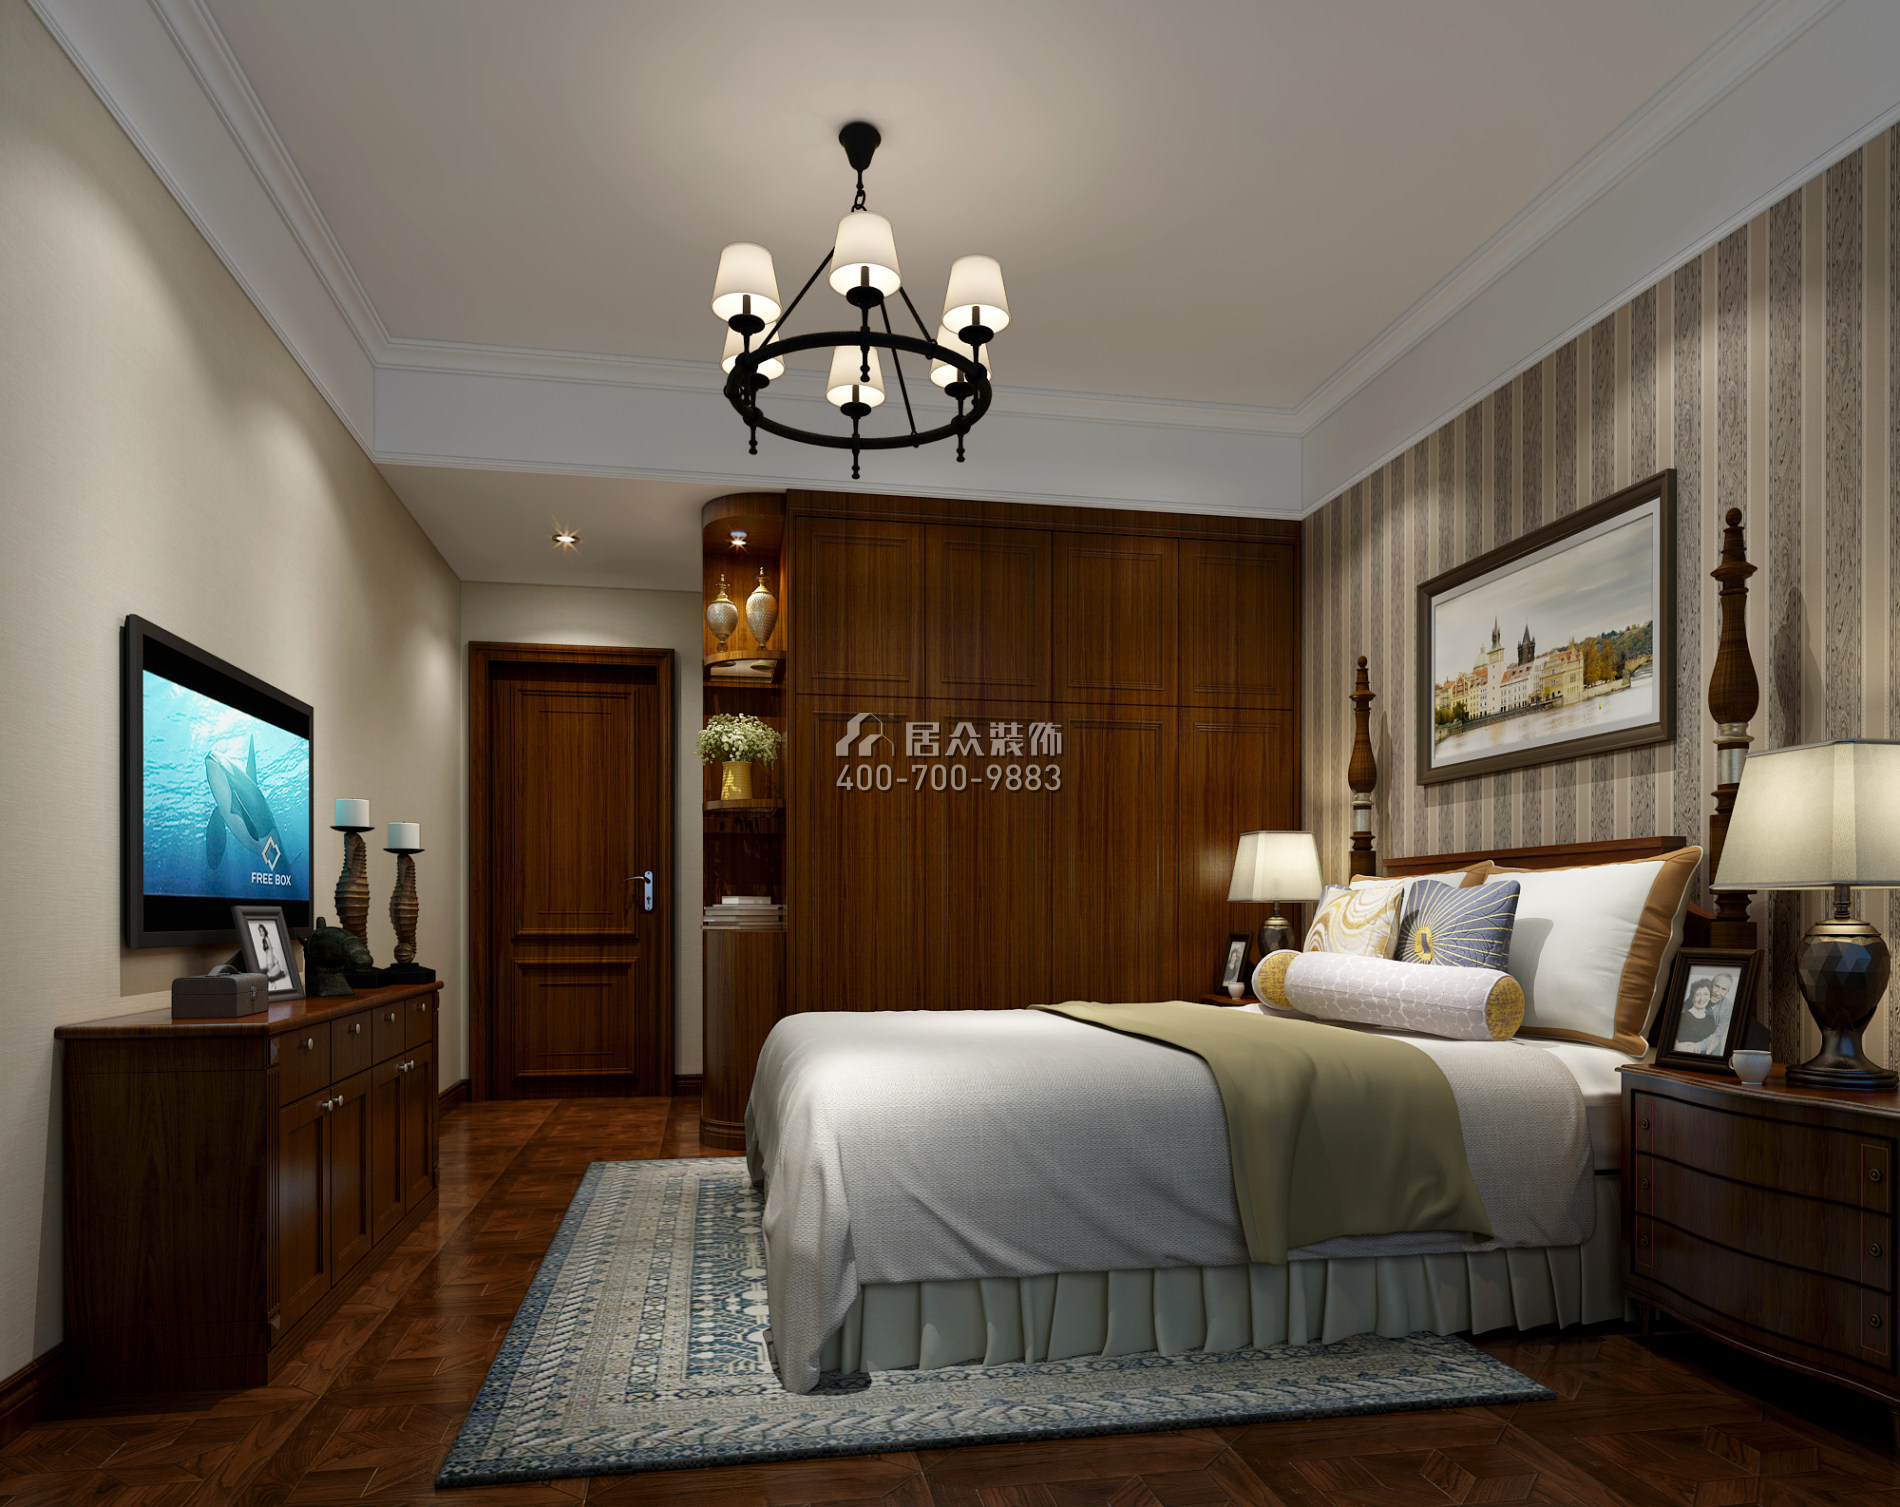 维港半岛167平方米美式风格平层户型卧室装修效果图